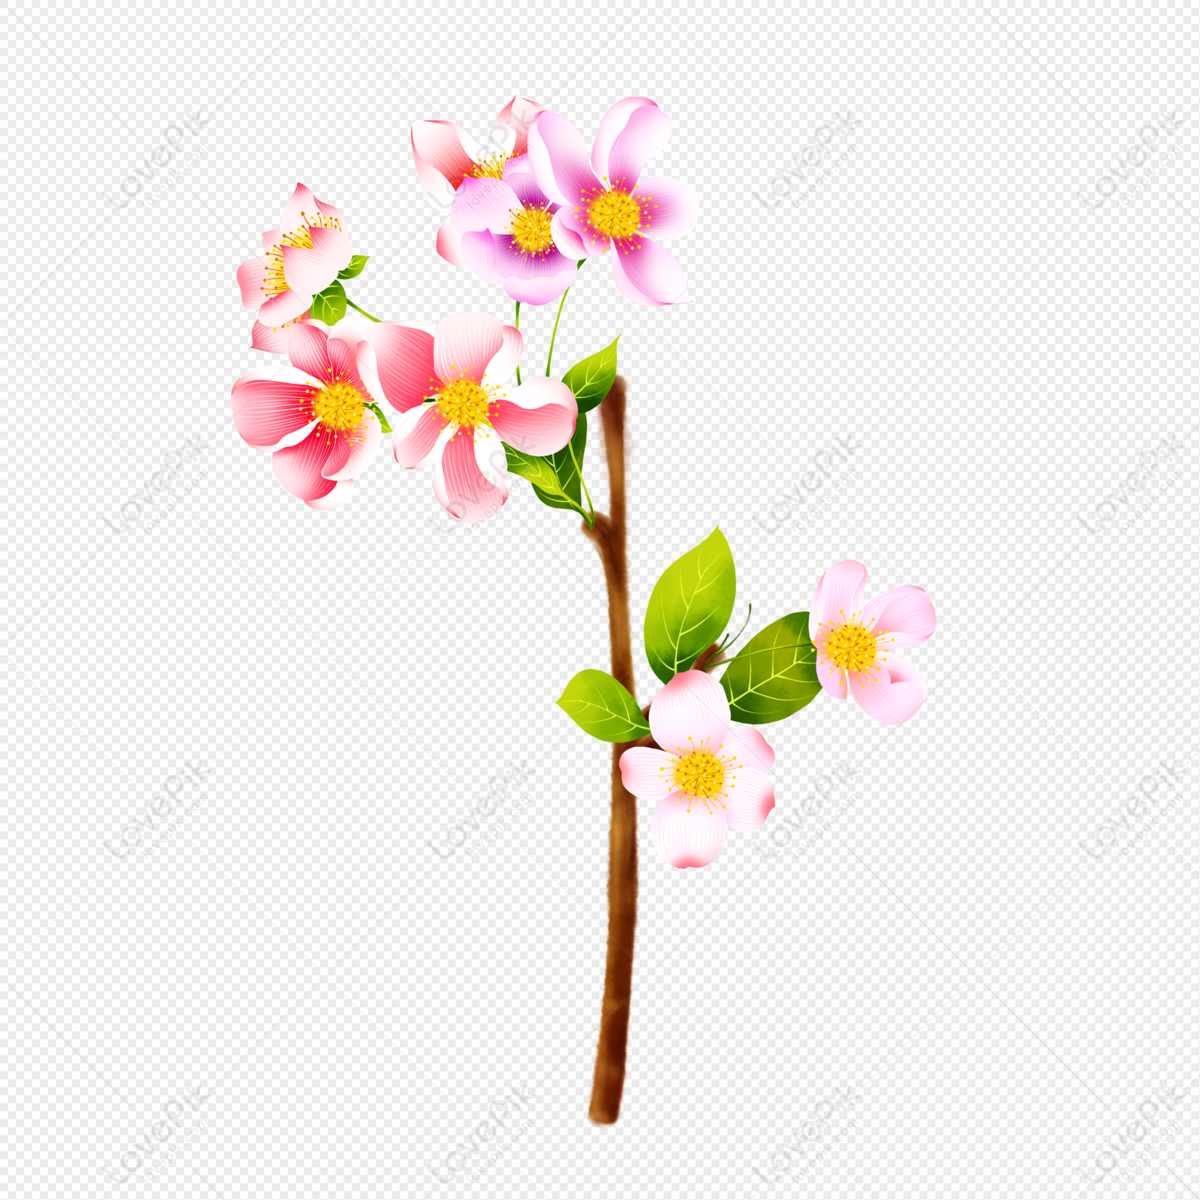 Chào mừng năm mới với những hình ảnh hoa đào đầy rực rỡ và sắc màu. Ý nghĩa của hoa đào trong văn hóa Á Đông là sự tươi cười, hạnh phúc và thành công. Hãy khám phá những bức họa này và cảm nhận sự truyền cảm hứng của chúng.